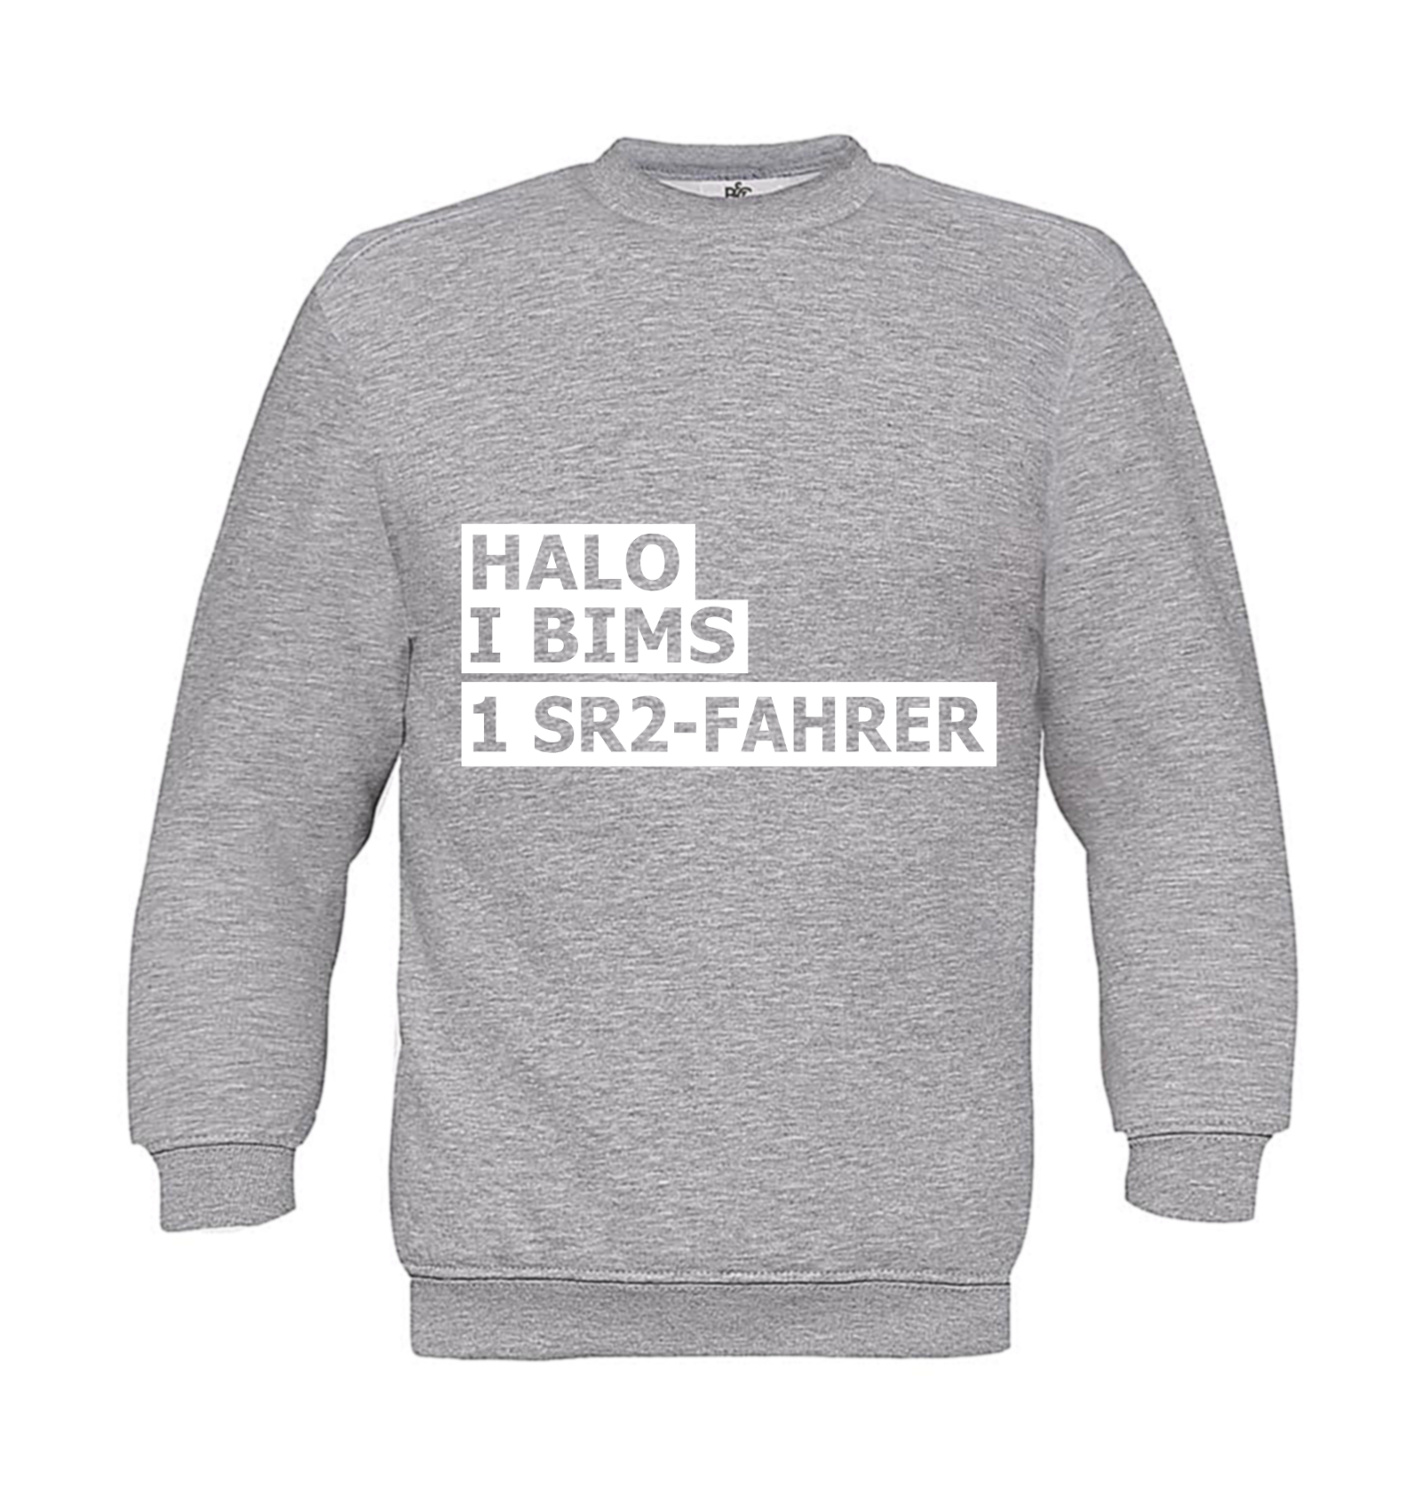 Sweatshirt Kinder 2Takter - Halo I bims 1 SR2-Fahrer